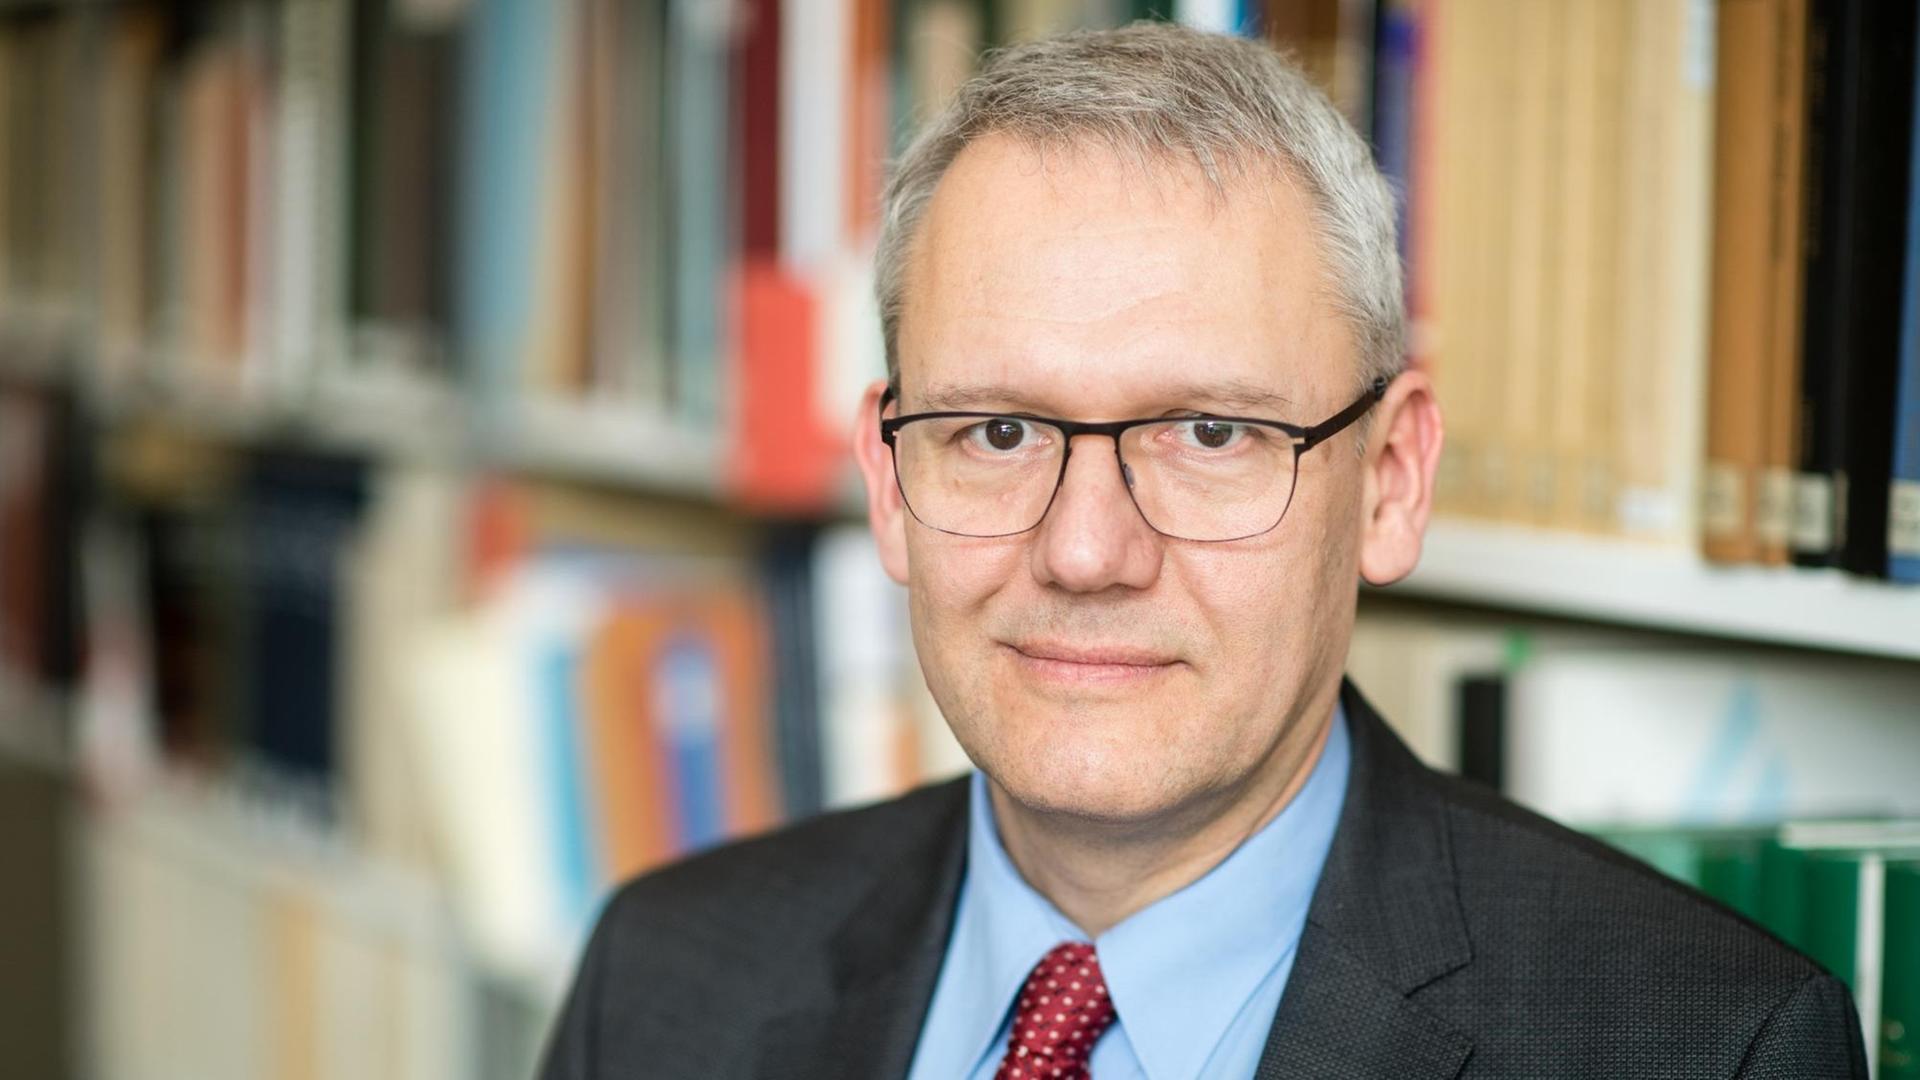 Andreas Wirsching, Leiter des Instituts für Zeitgeschichte in München, blickt in die Kamera.